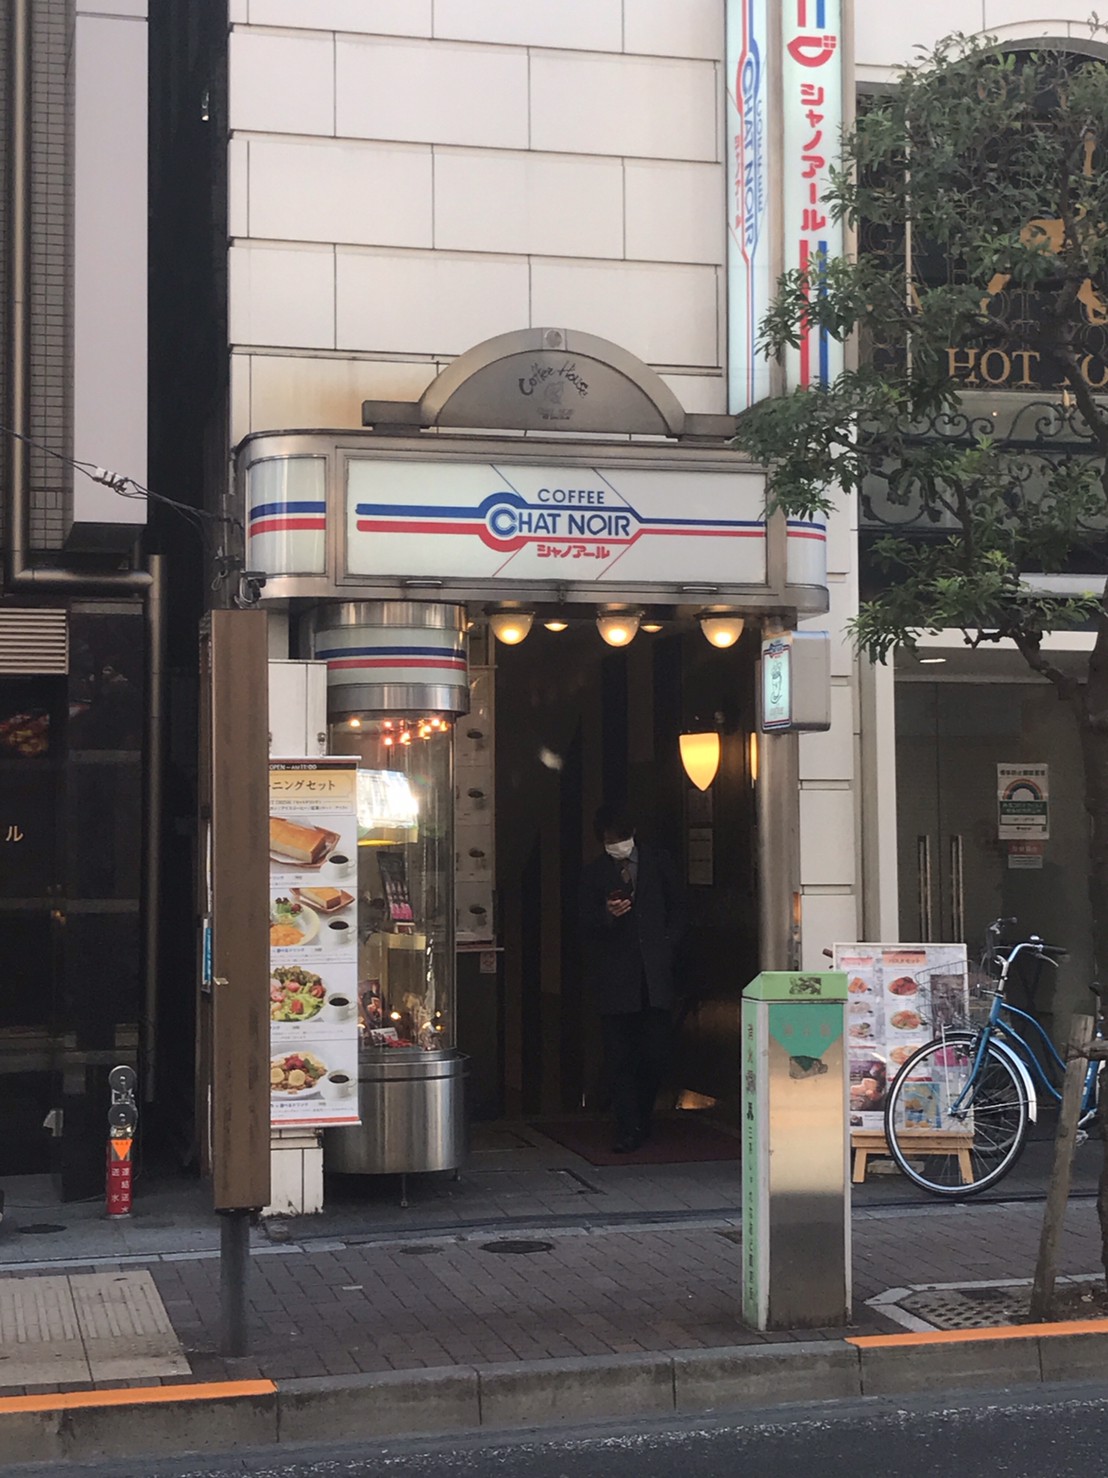 コーヒーハウス・シャノアール 三軒茶屋店